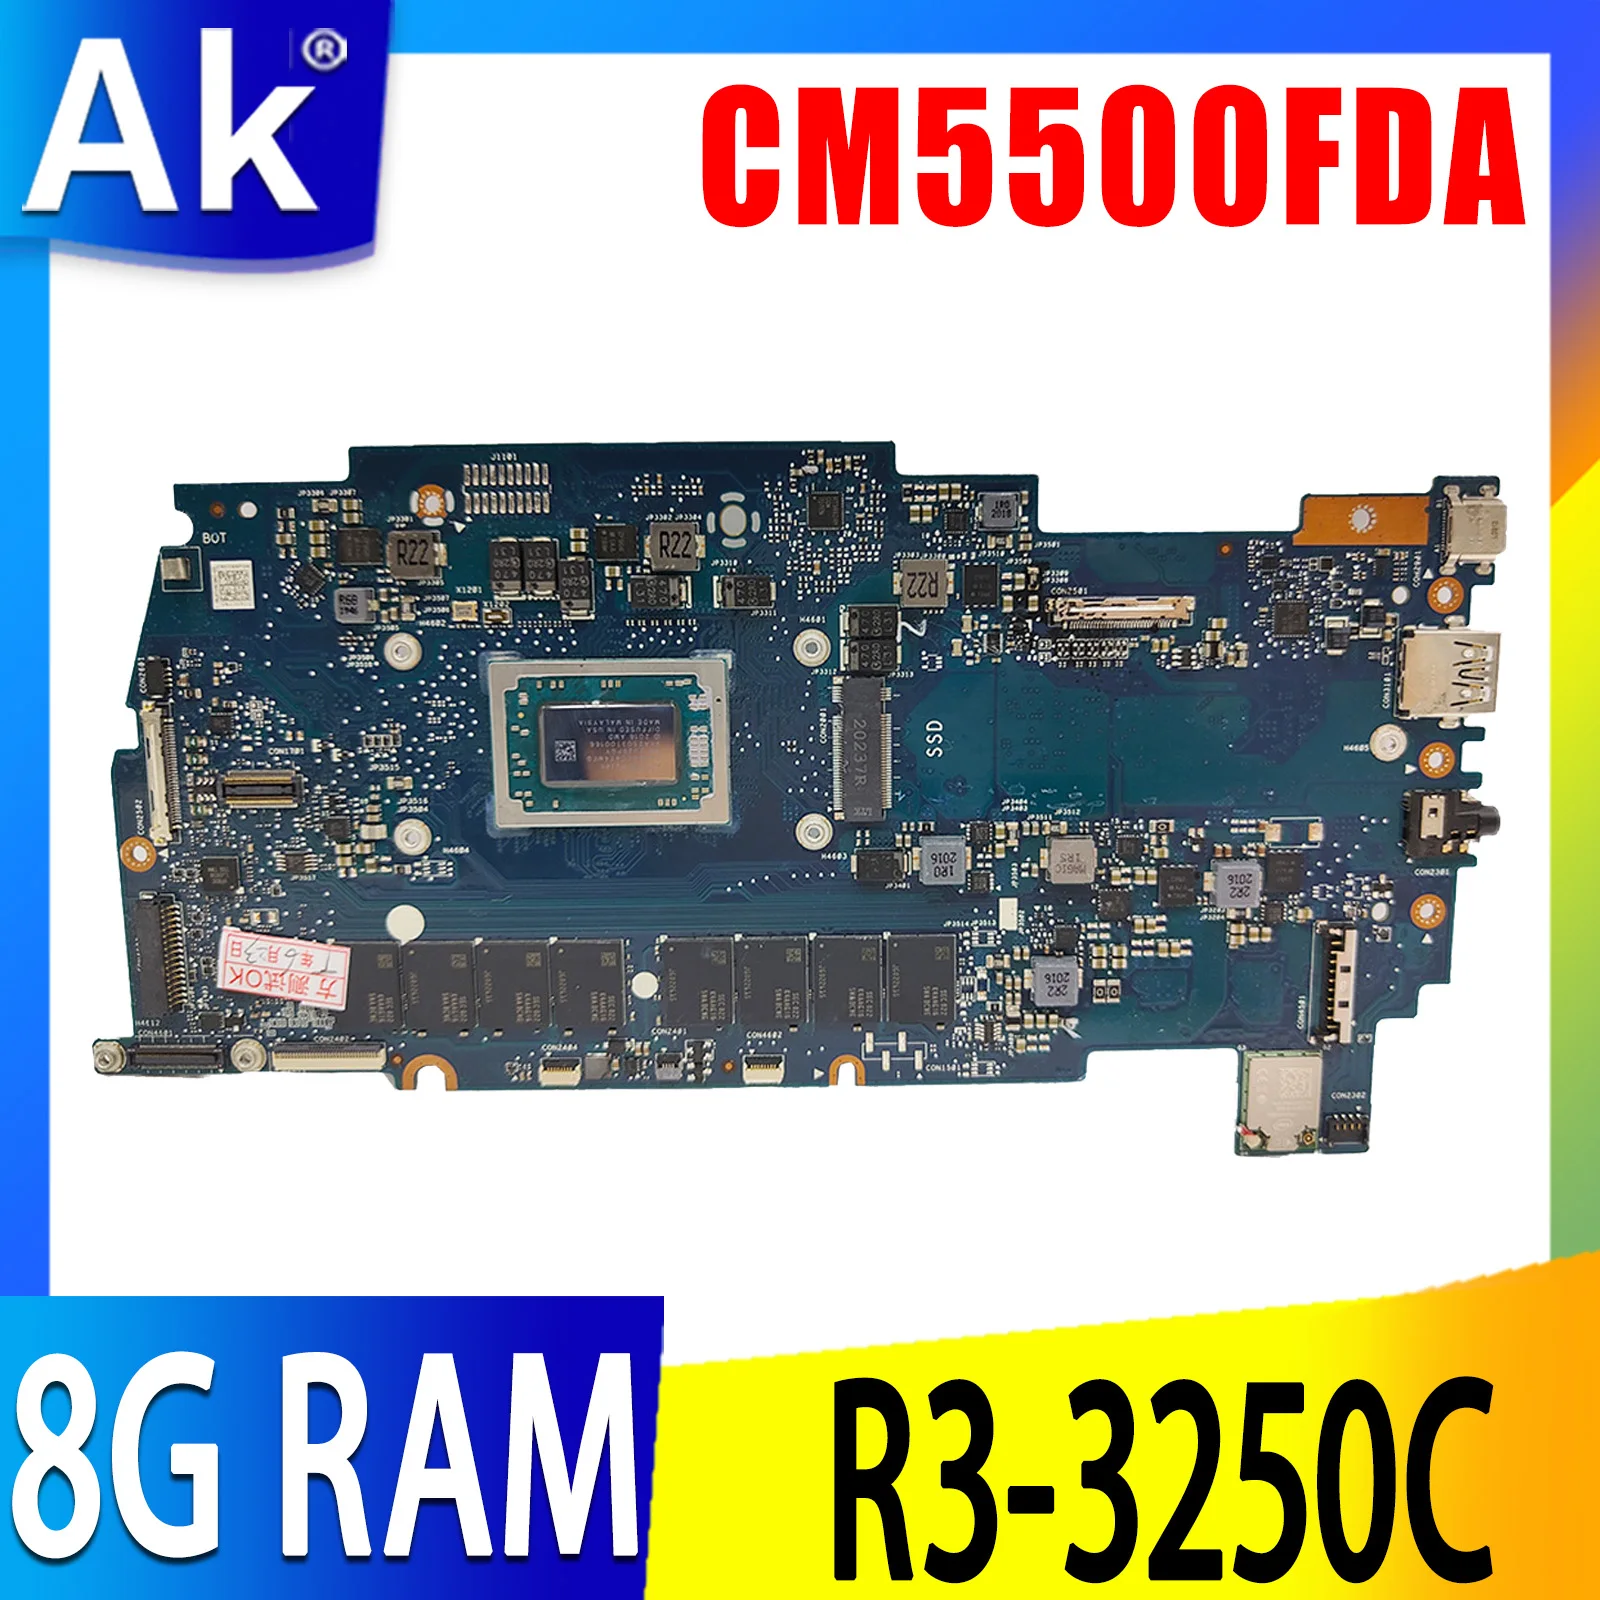   CM5500FDA  ASUS Chromebook Flip CM5500FDA-E60094      R3-3250C cpu 8  RAM    